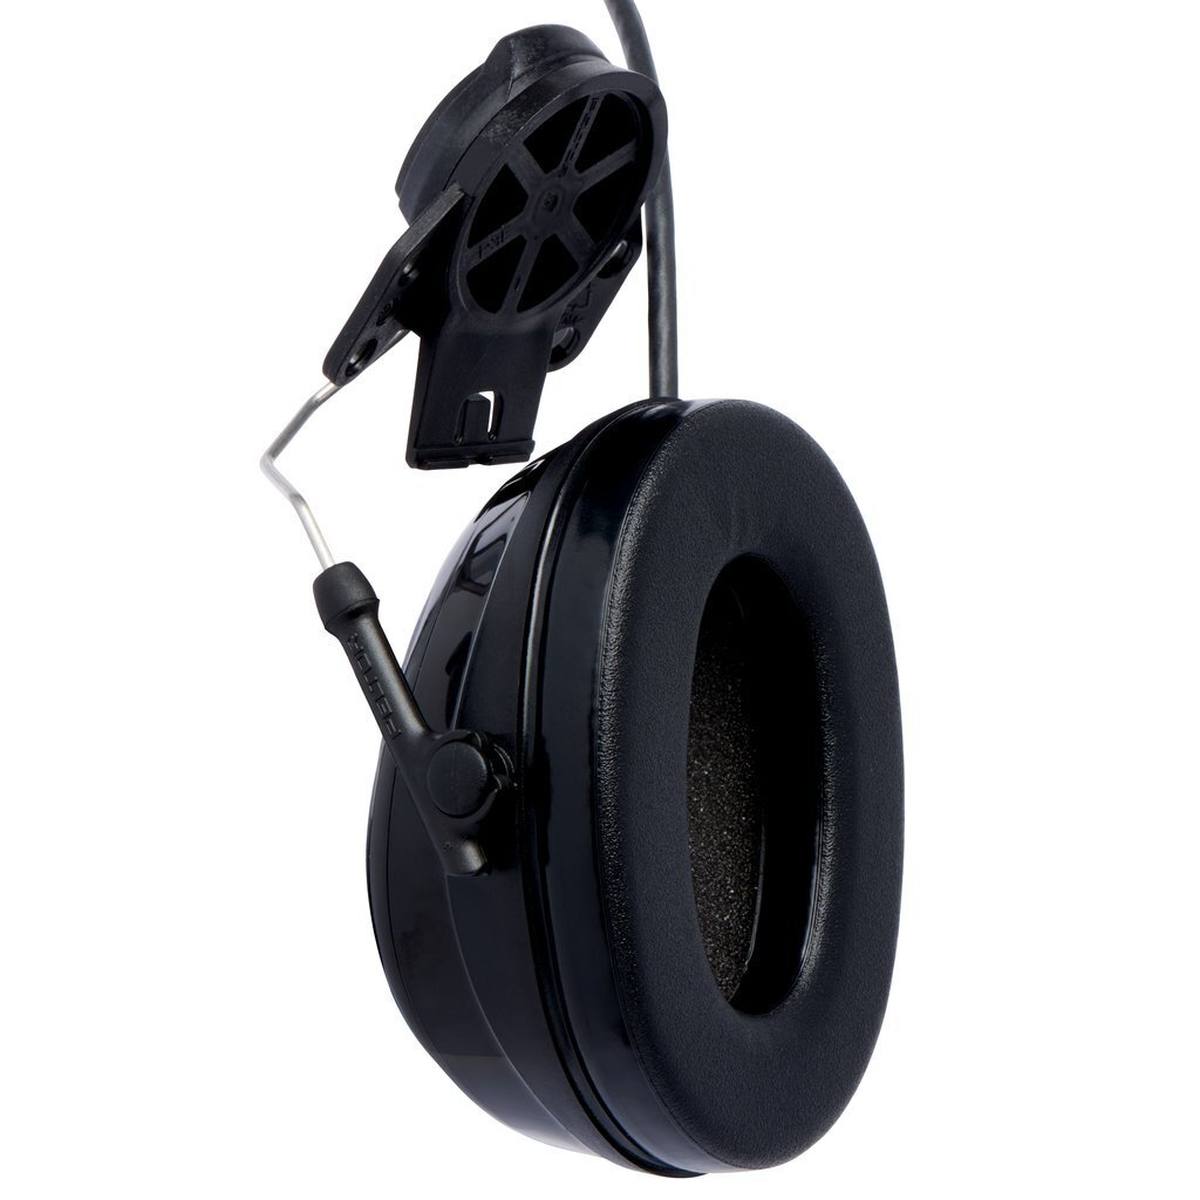 3M PELTOR Casque antibruit ProTac III Slim, noir, version casque, avec technologie d'atténuation active en fonction du niveau pour percevoir les bruits environnants, SNR=25 dB, noir